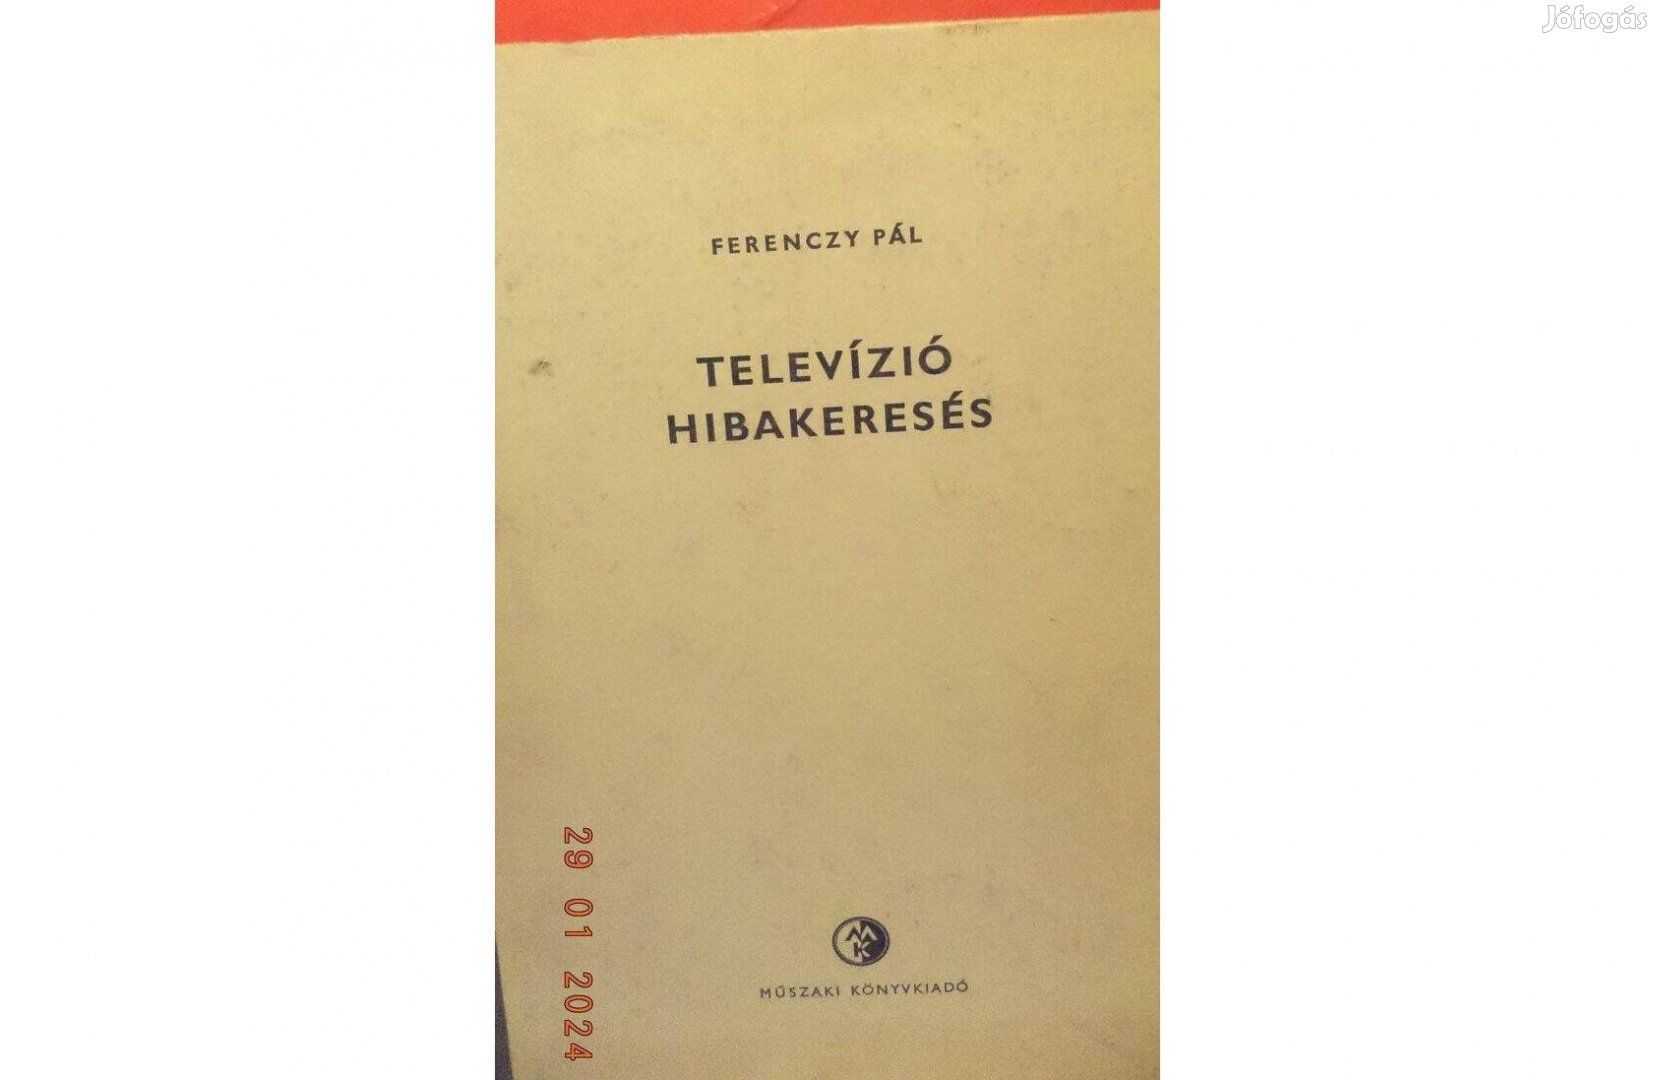 Ferenczy Pál: Televízió hibakeresés